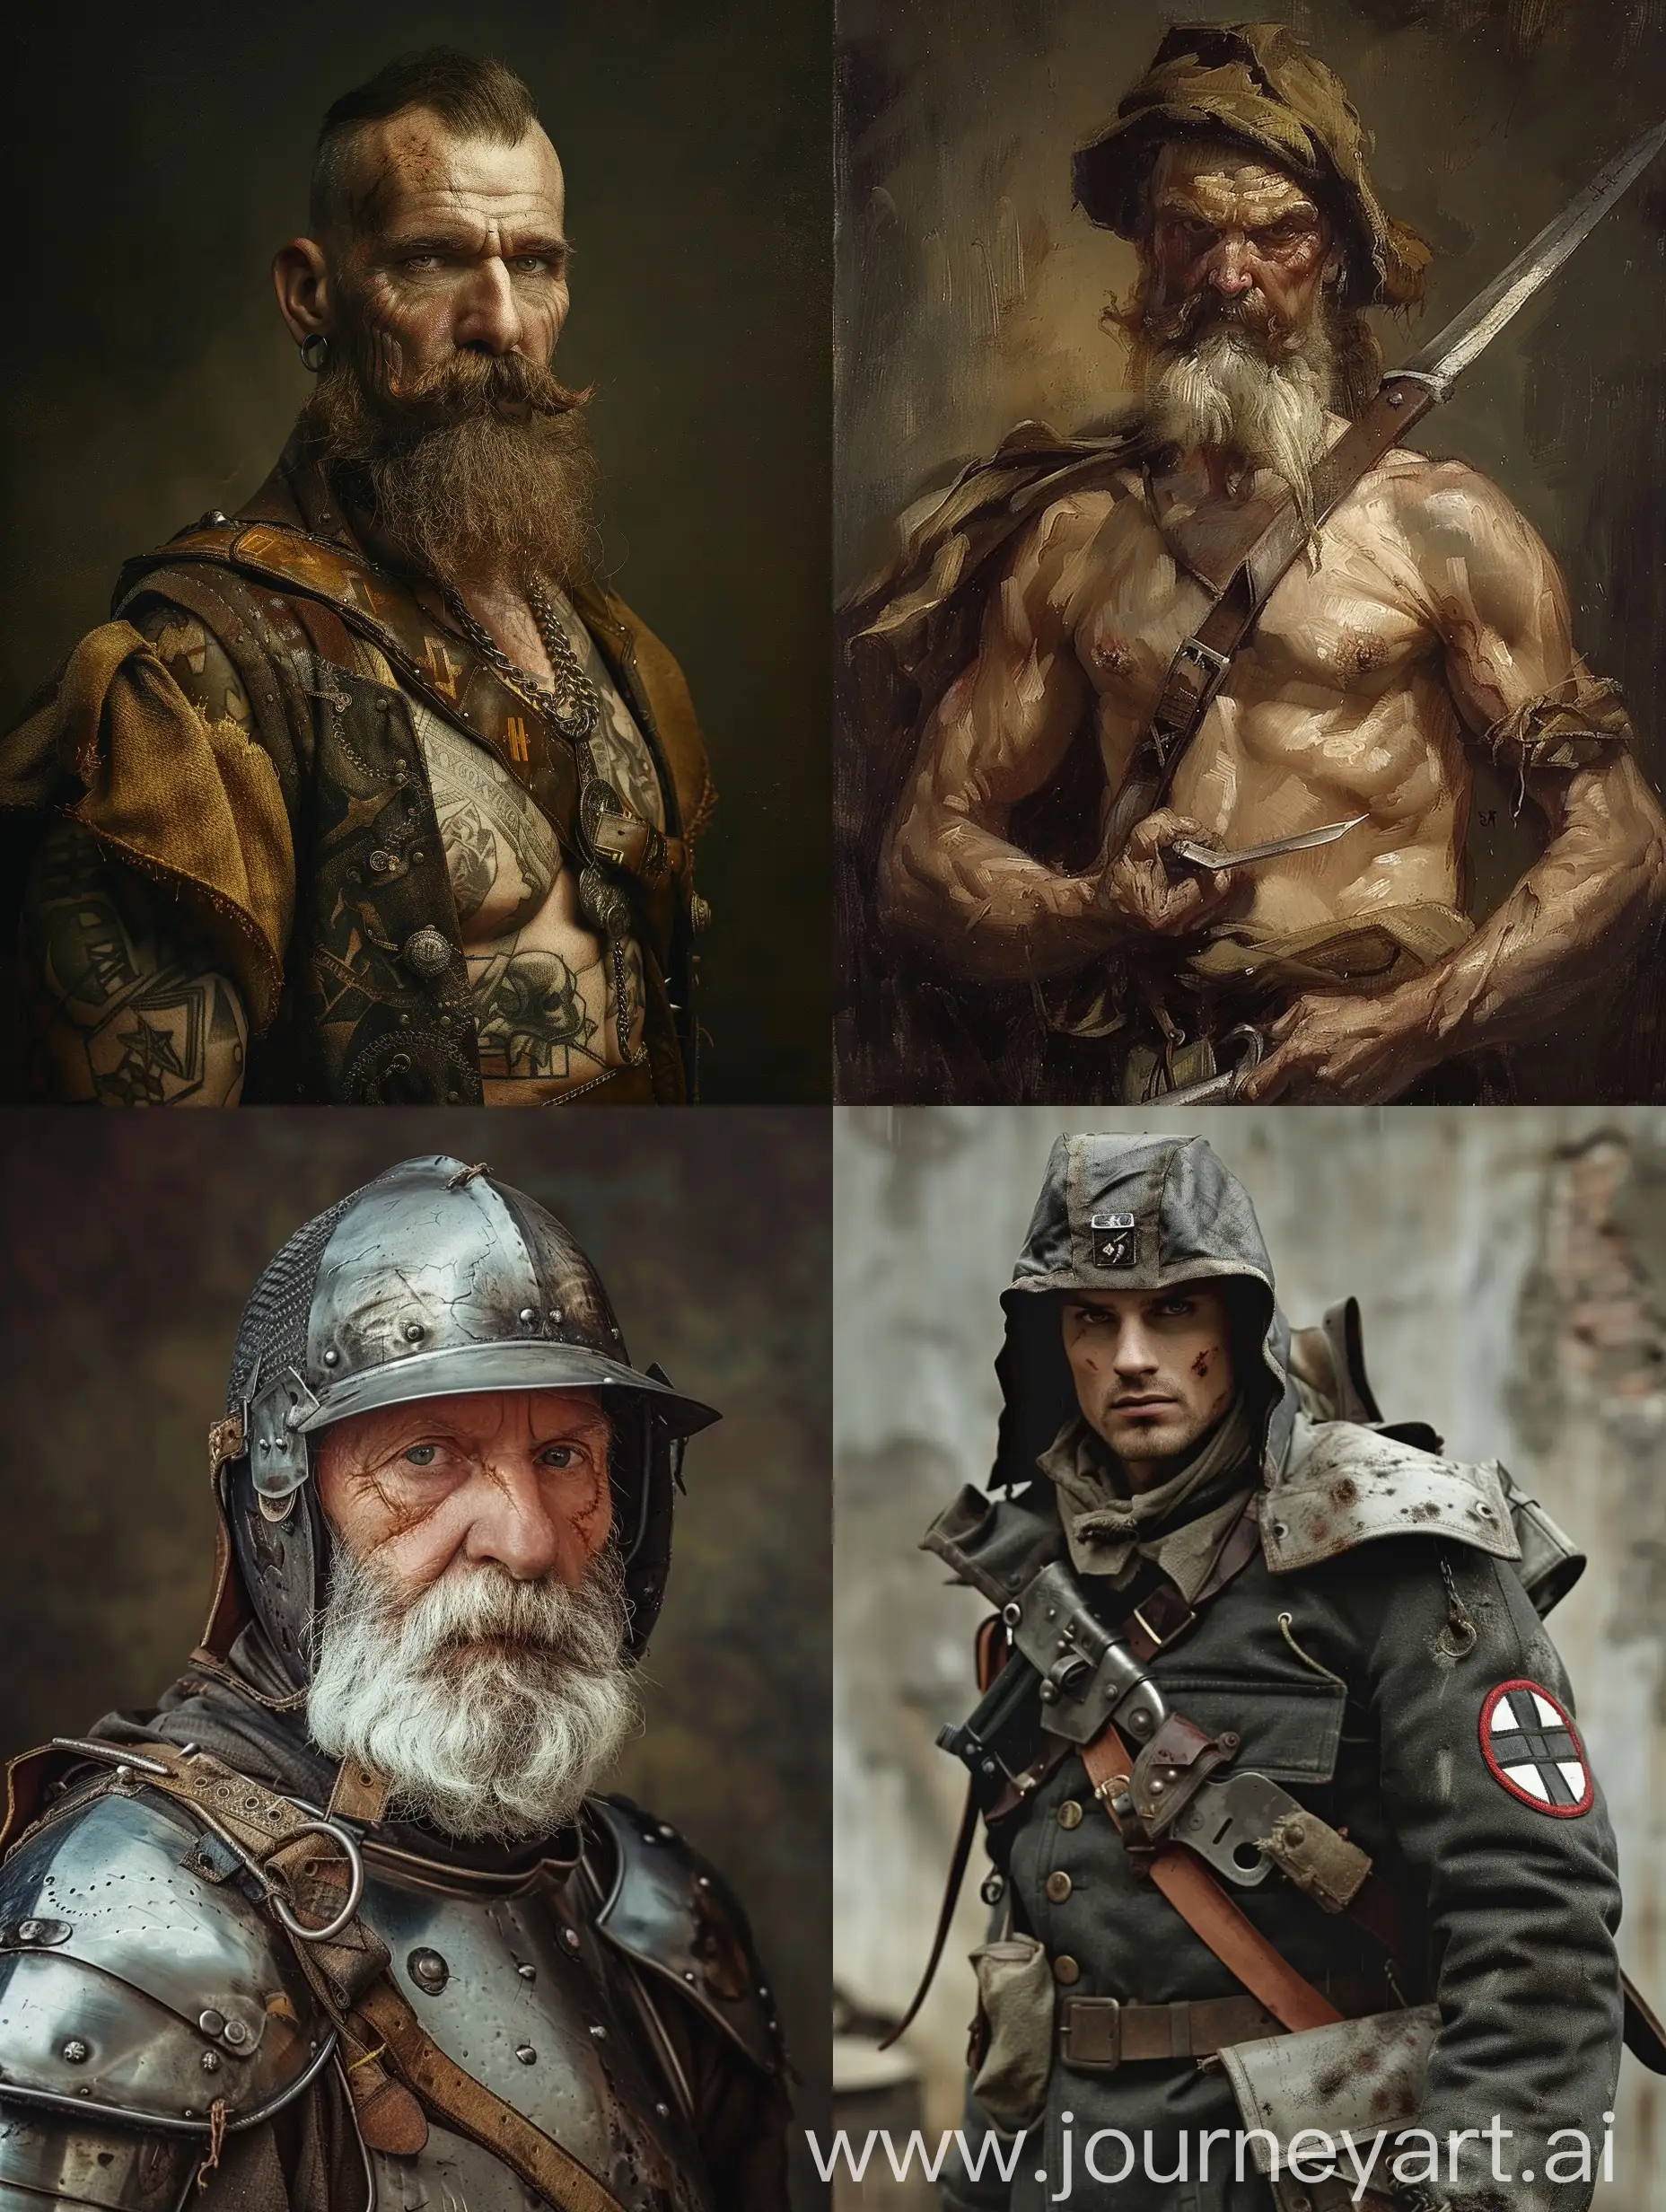 Renaissance-Style-Portrait-of-an-Aryan-Man-from-World-War-2